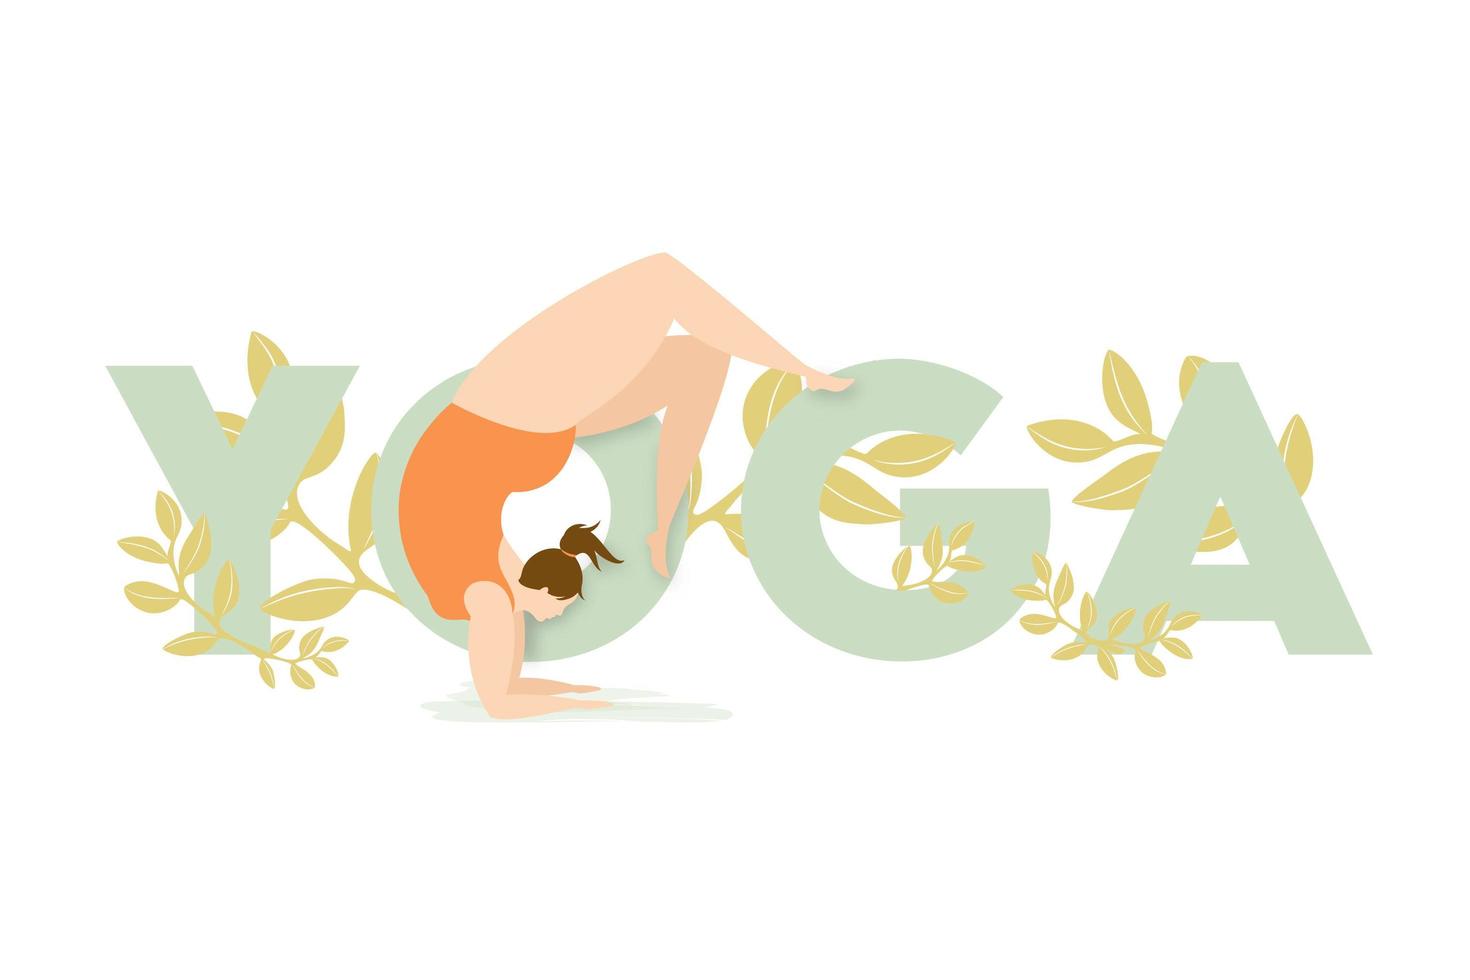 mulher em pose de ioga na frente do texto de ioga vetor